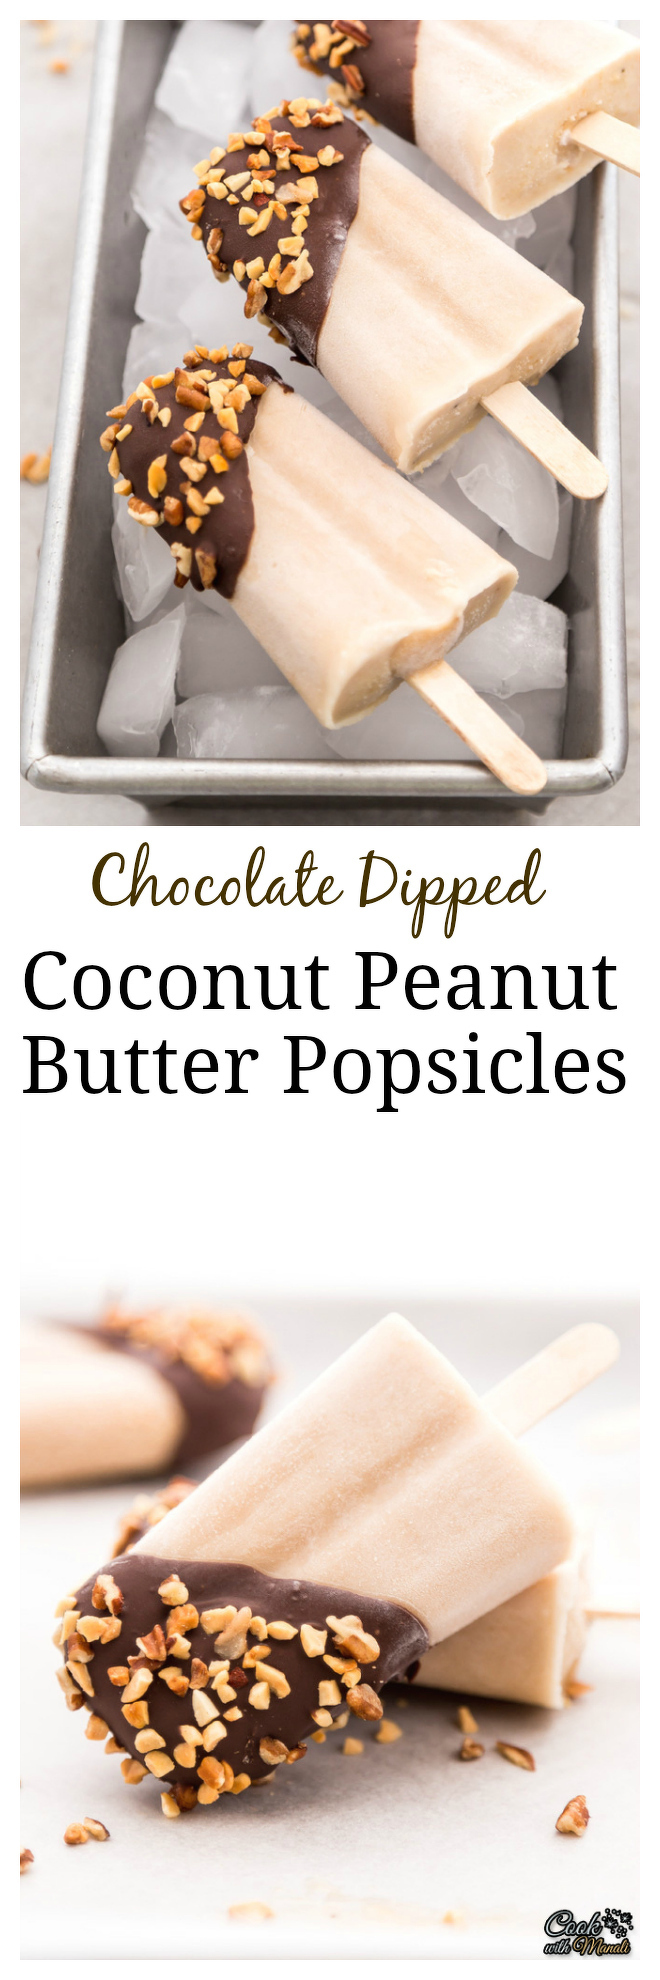 Coconut Peanut Butter Popsicles Collage-nocwm